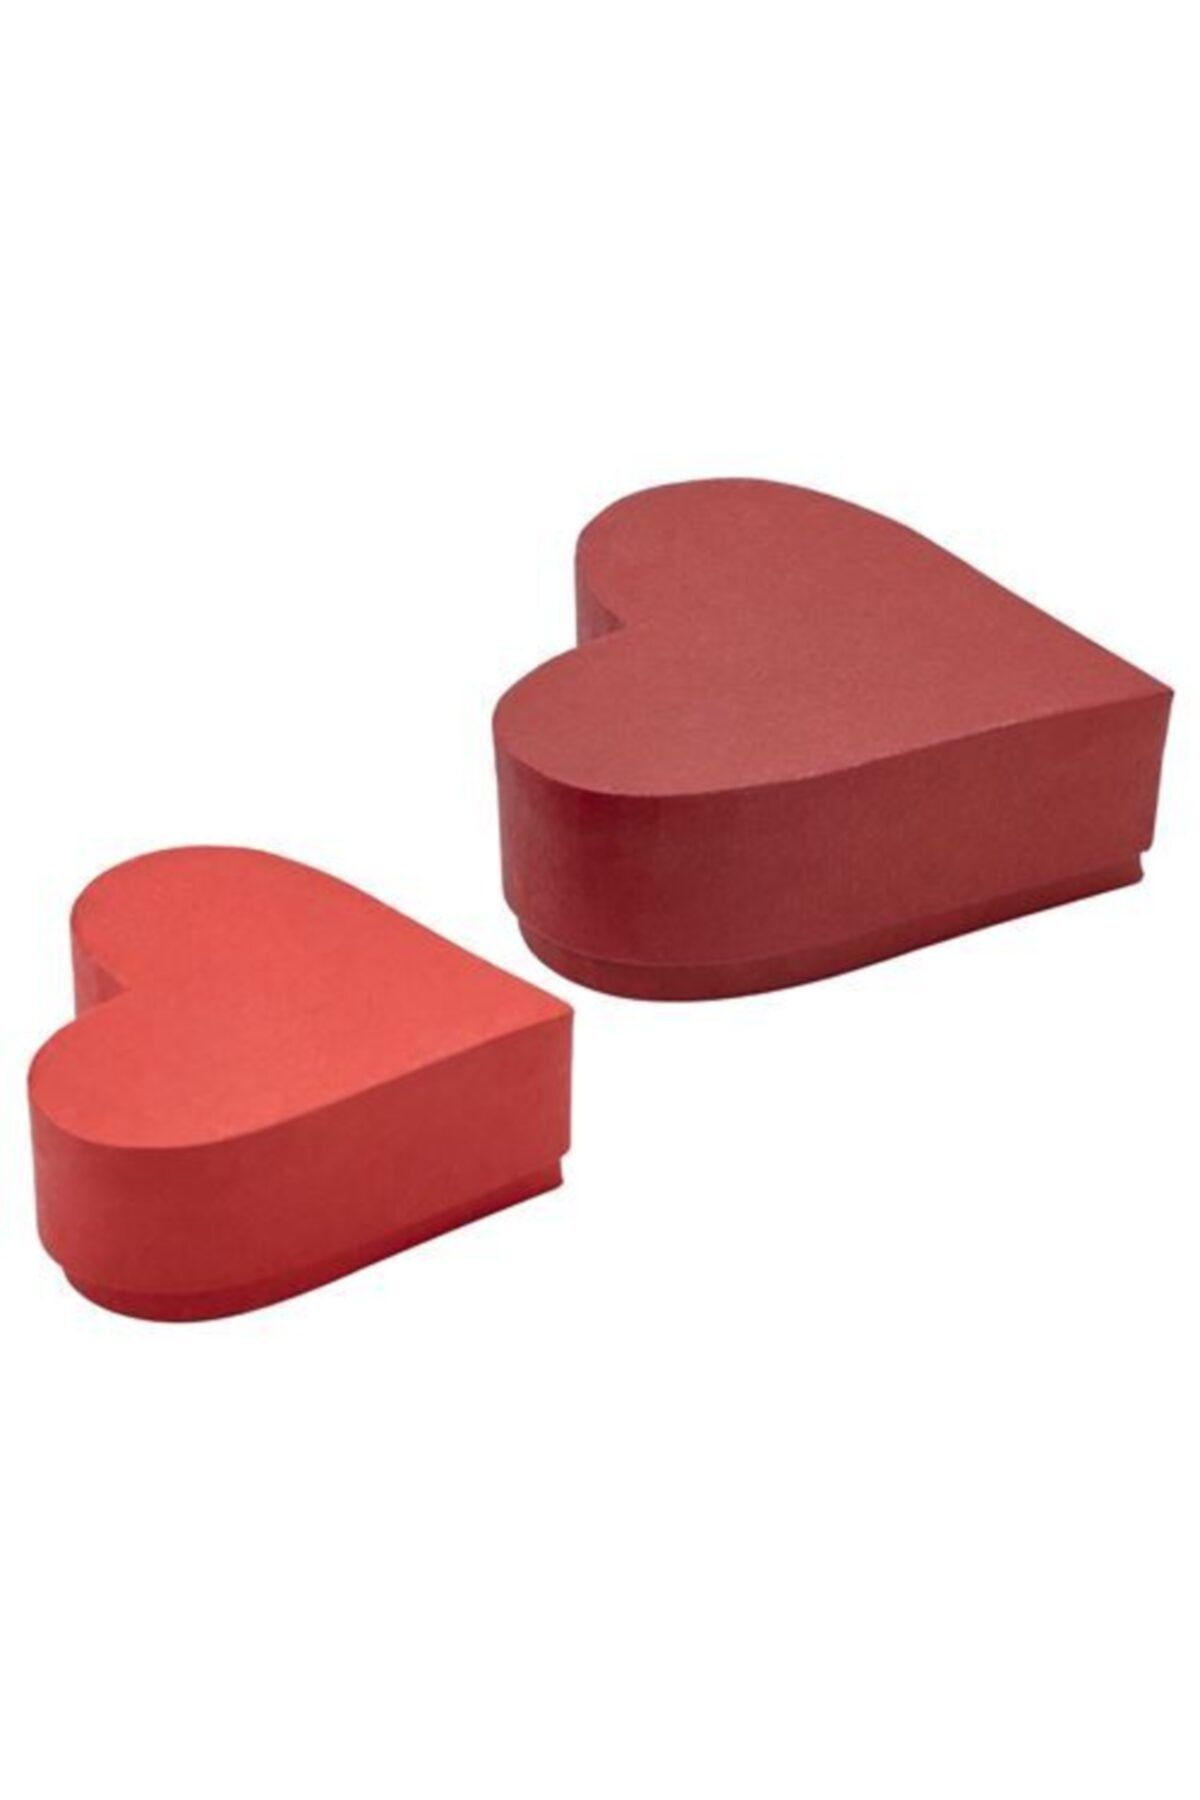 IKEA Vınter 2021 Hediyelik Kalpli Kutu Seti 2 Li Kırmızı